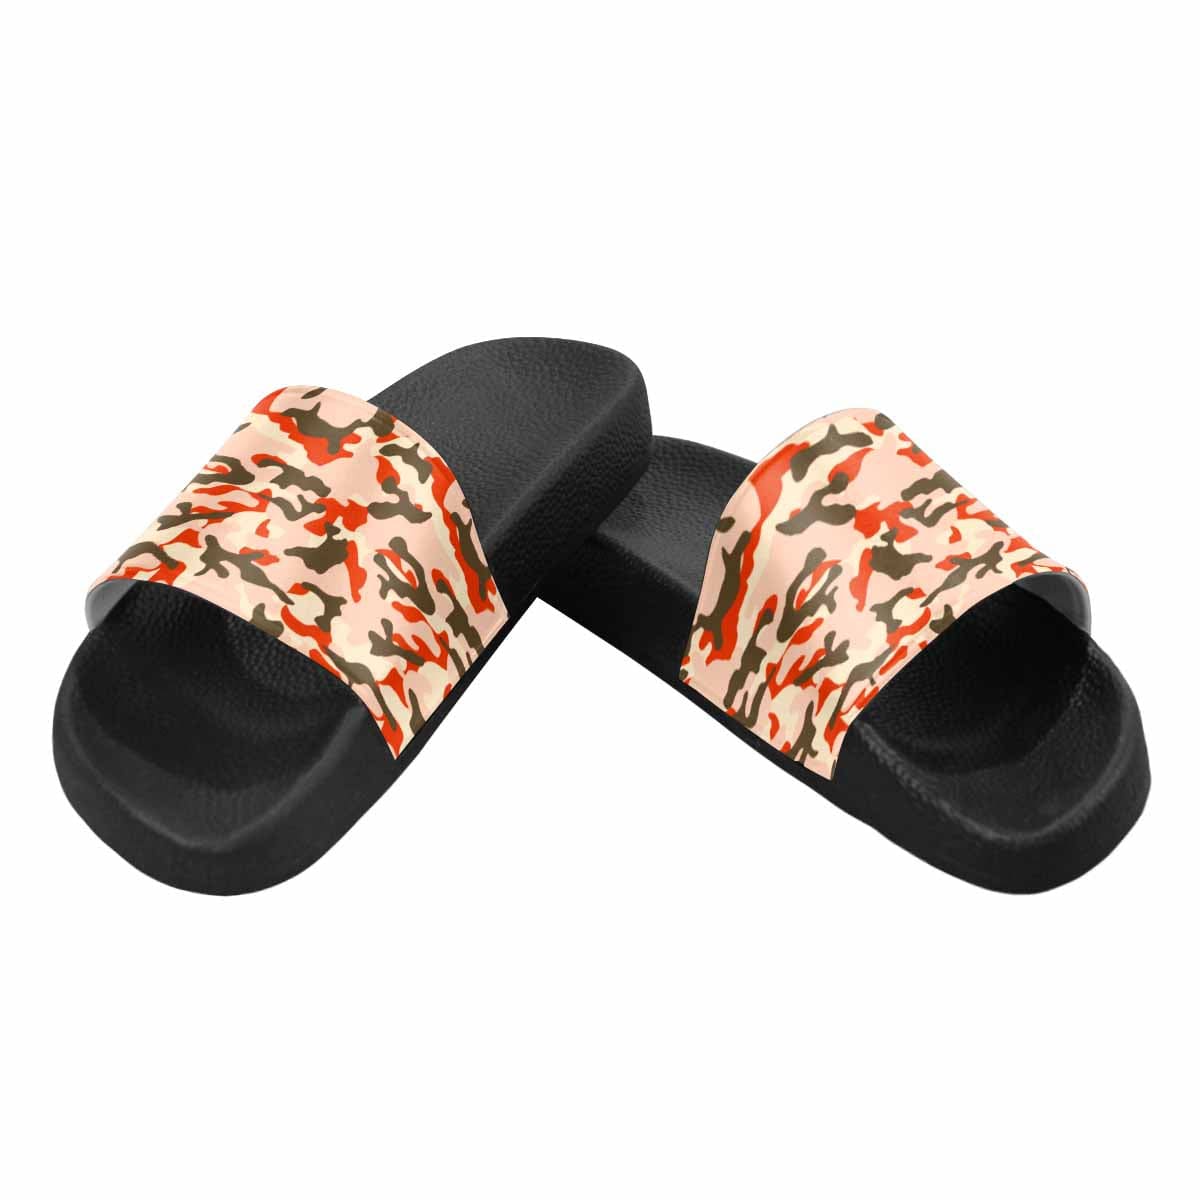 Slippers Men's Slide Sandals - KME means the very best